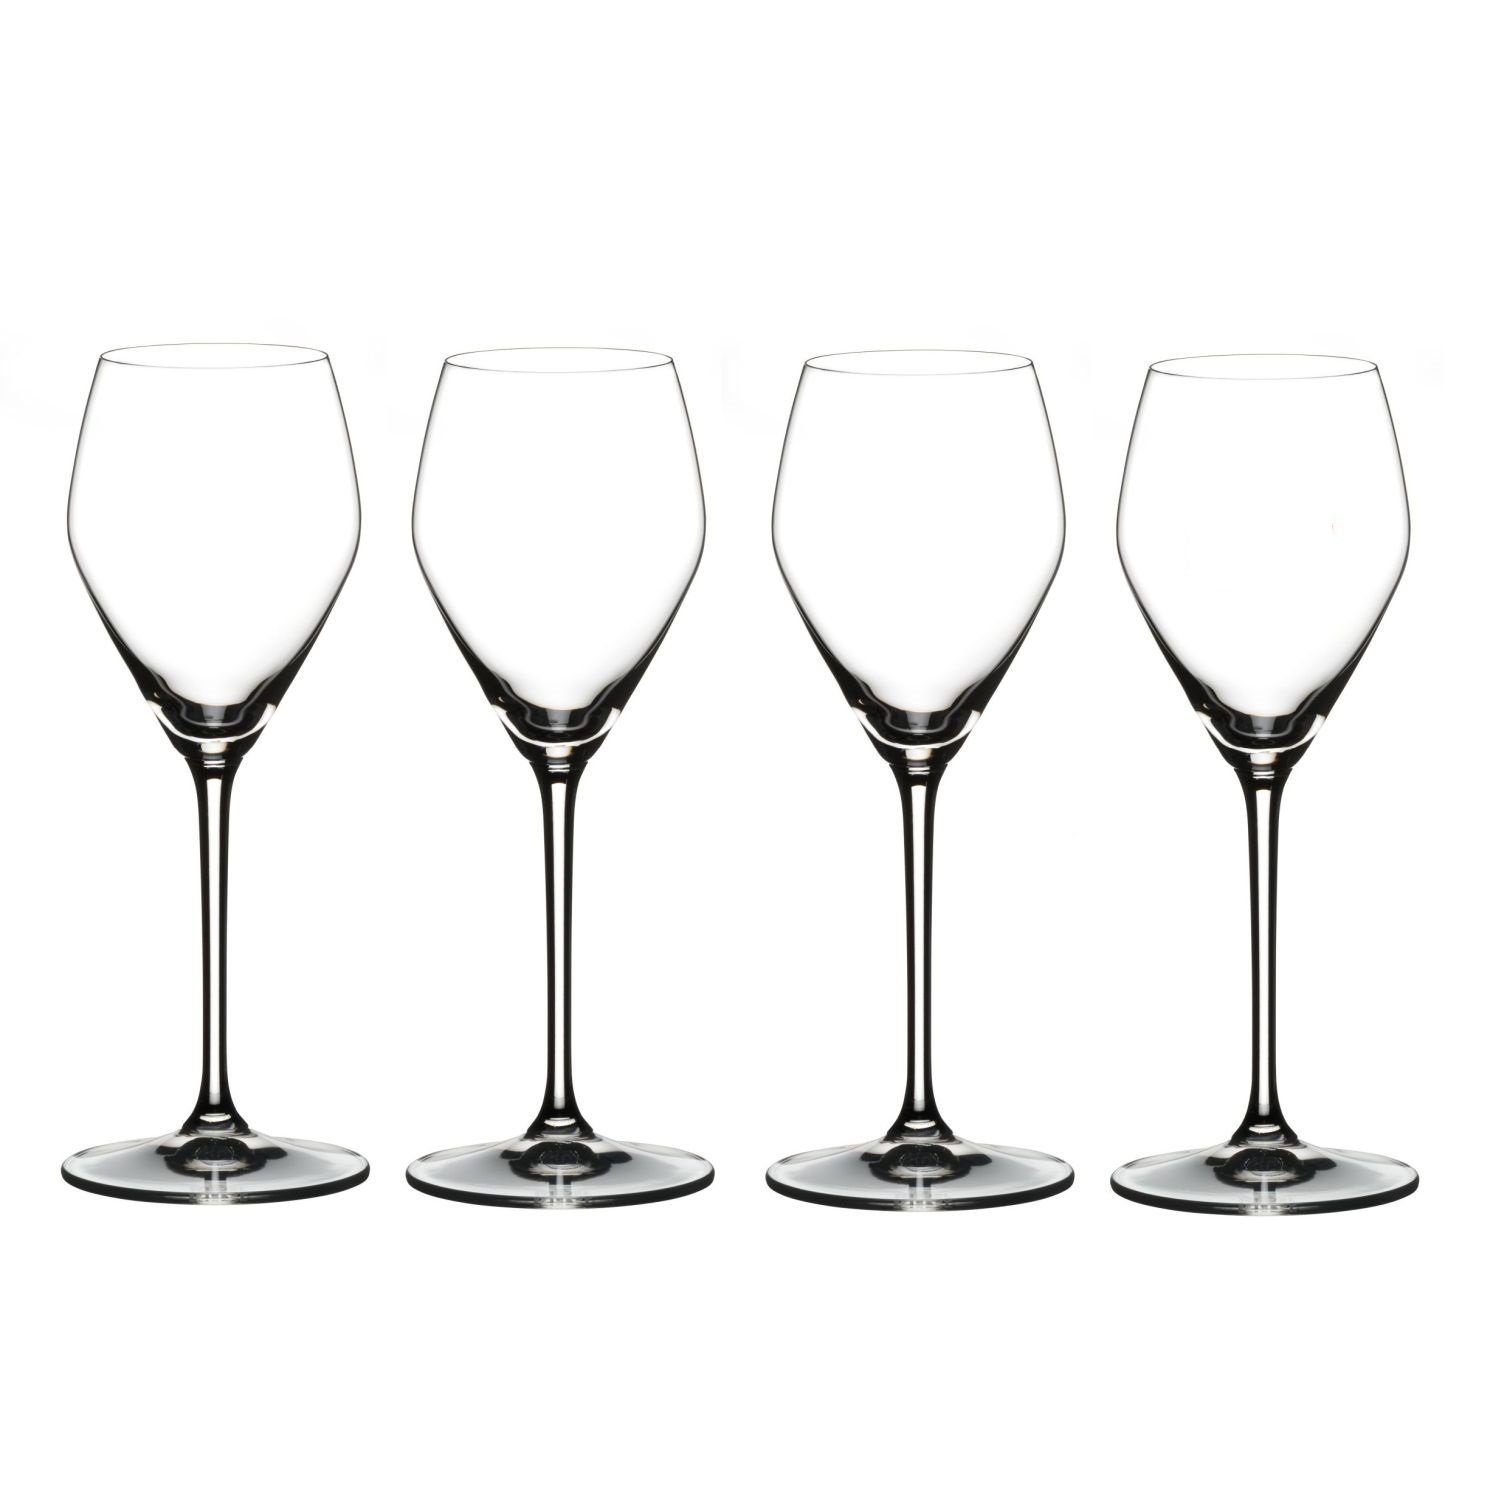 RIEDEL Glas Weinglas Extreme Rosé / Champagne 4er Set, Kristallglas